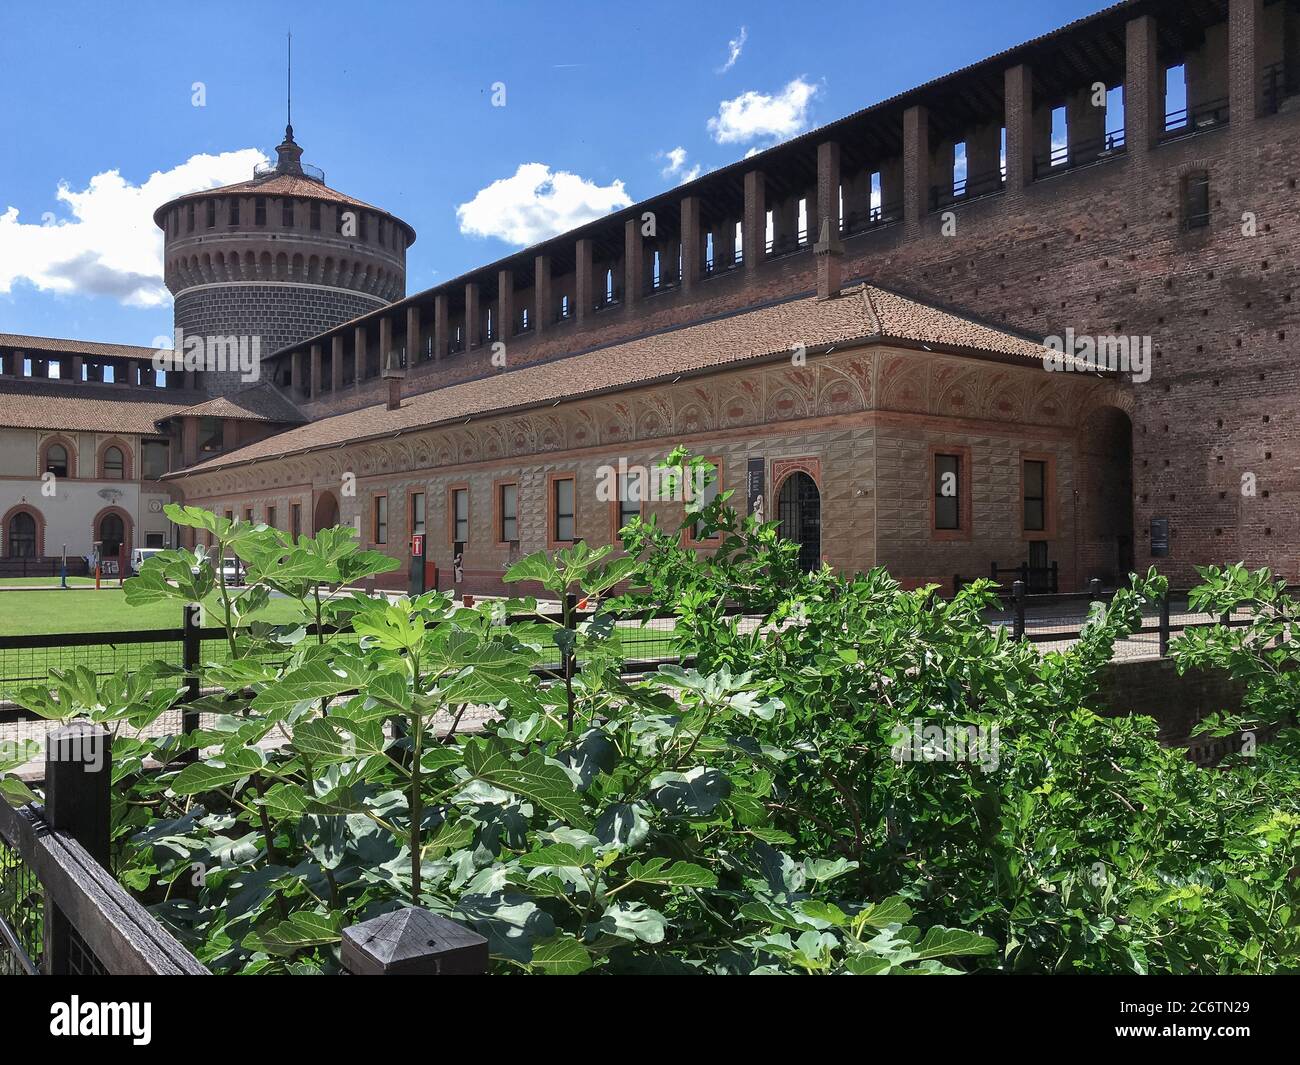 Intérieur du château de Sforza (Castello Sforzesco) à Milan (ITALIE). L'une des principales attractions touristiques de Milan, ce château a été construit au XVe siècle par Banque D'Images